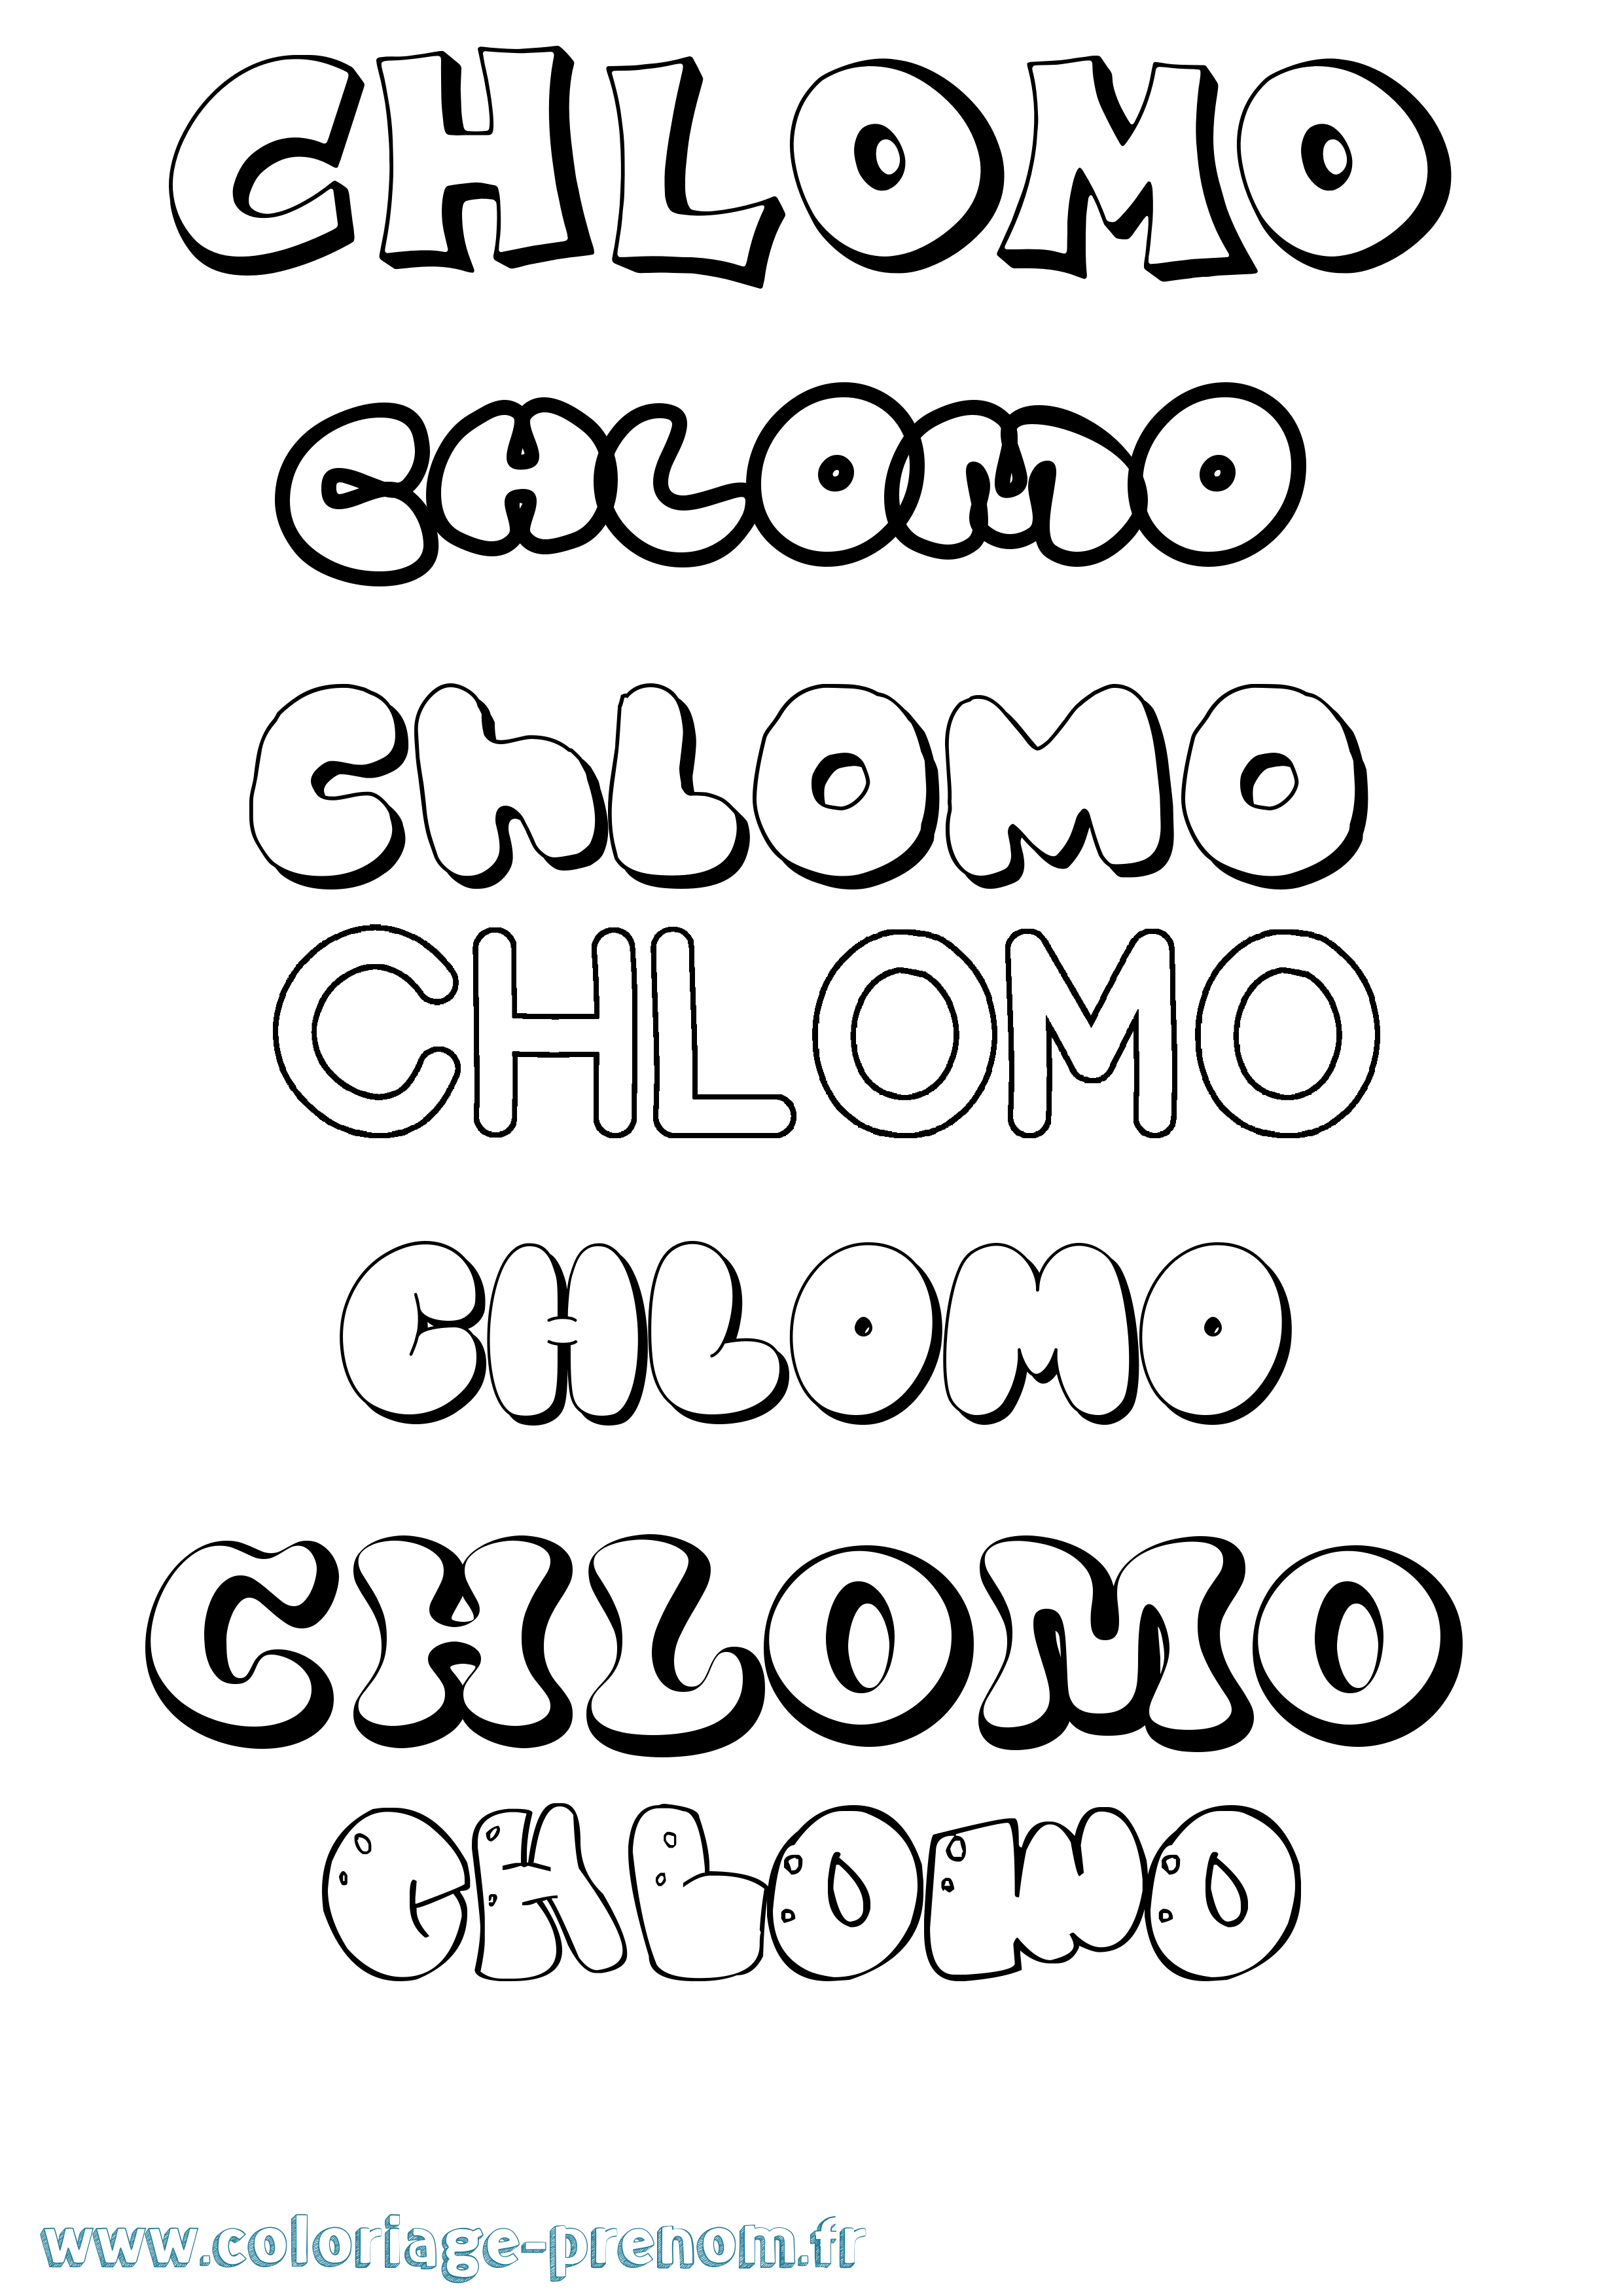 Coloriage prénom Chlomo Bubble